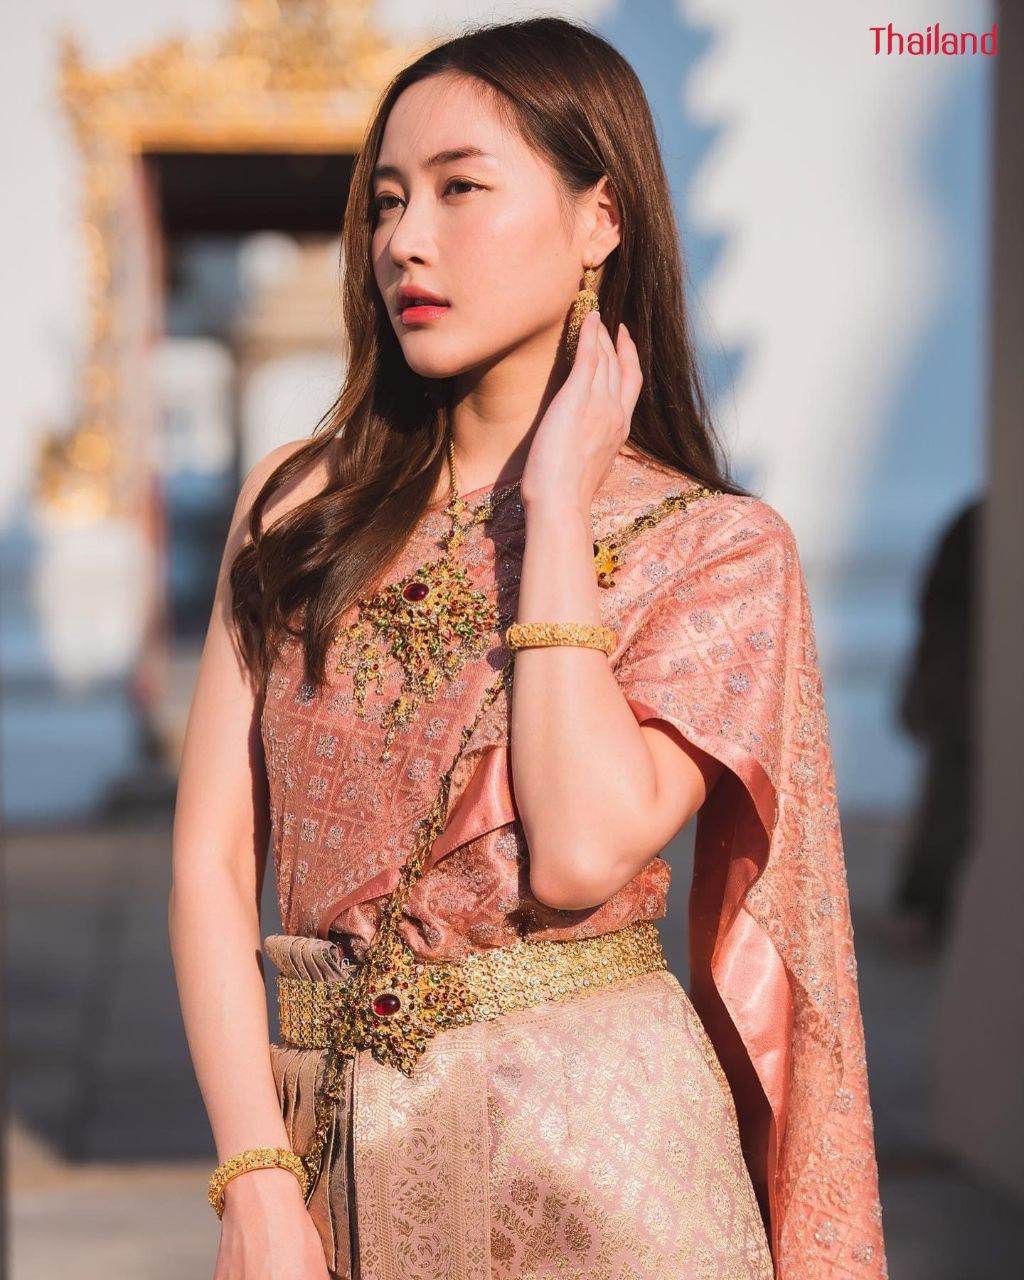 THAILAND 🇹🇭 | The Sbai, Thai dress (ชุดไทย)